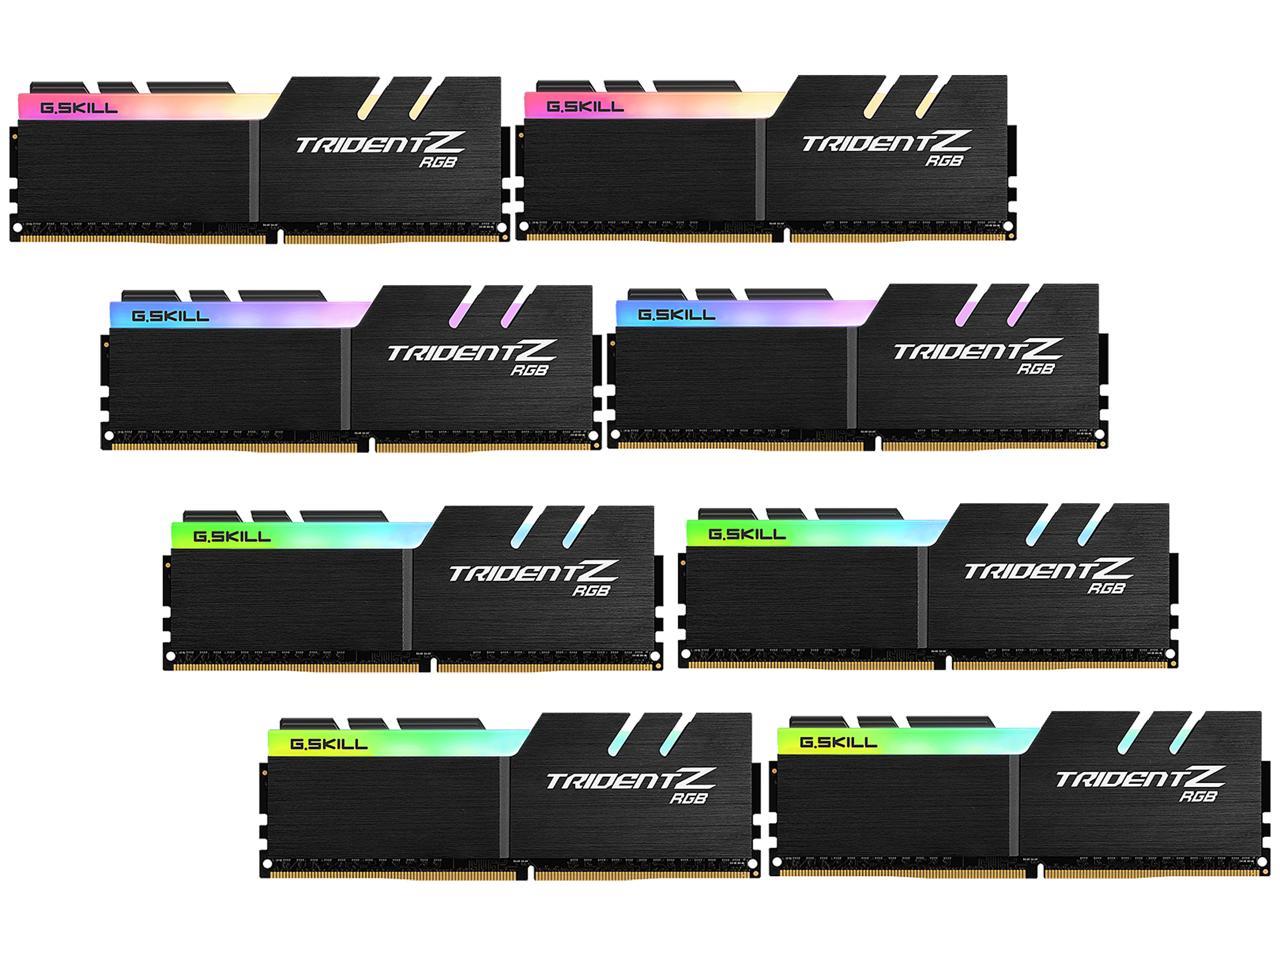 G.SKILL TridentZ RGB Series 64GB (8 x 8GB) 288-Pin DDR4 SDRAM DDR4 2933 (PC4 23400) AMD X399 Desktop Memory Model F4-2933C14Q2-64GTZRX